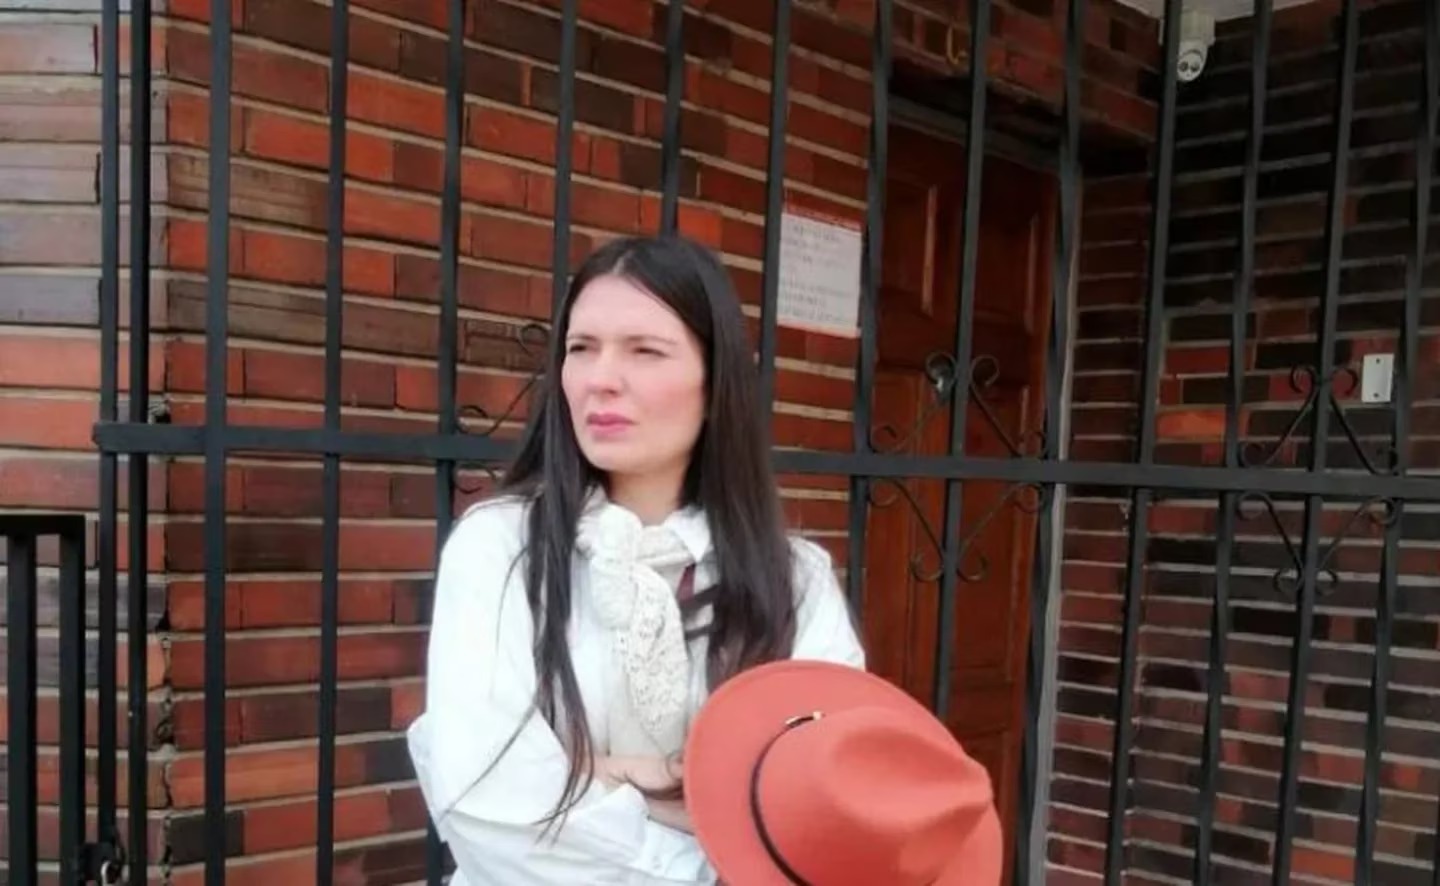 La dramática historia de la mujer que se viralizó porque no paga taxis, hoteles ni restaurantes (VIDEO)